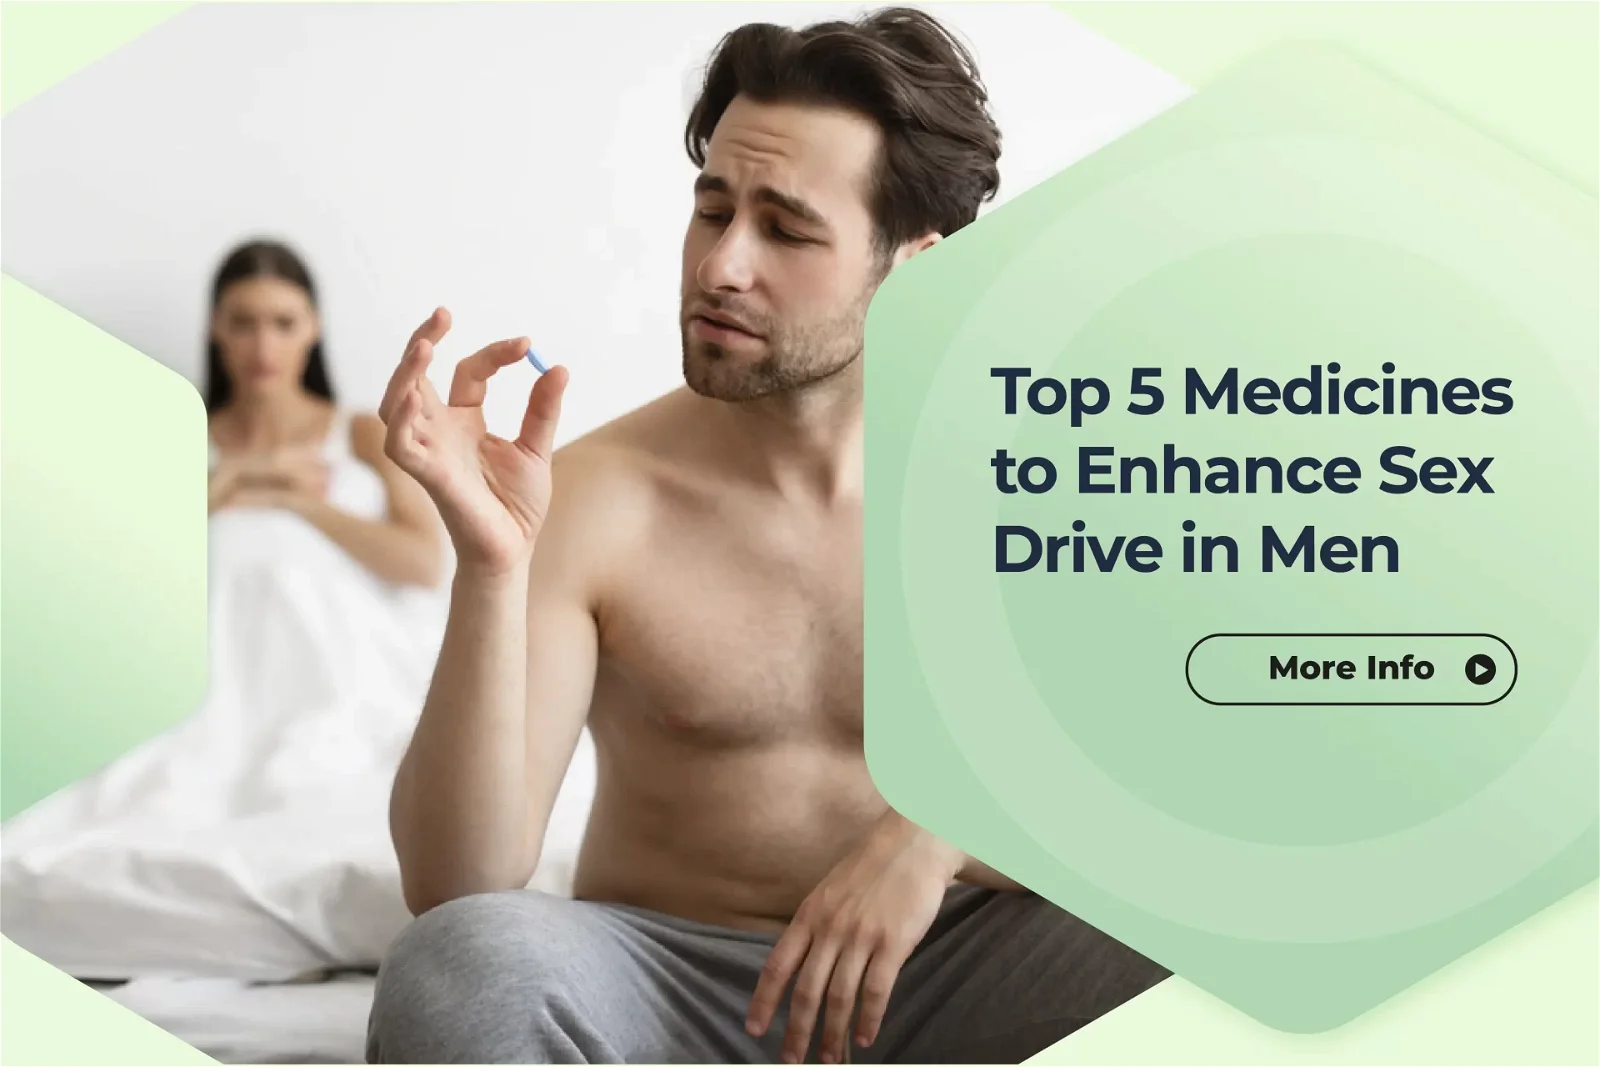 Top 5 Medicines to Enhance Sex Drive in Men